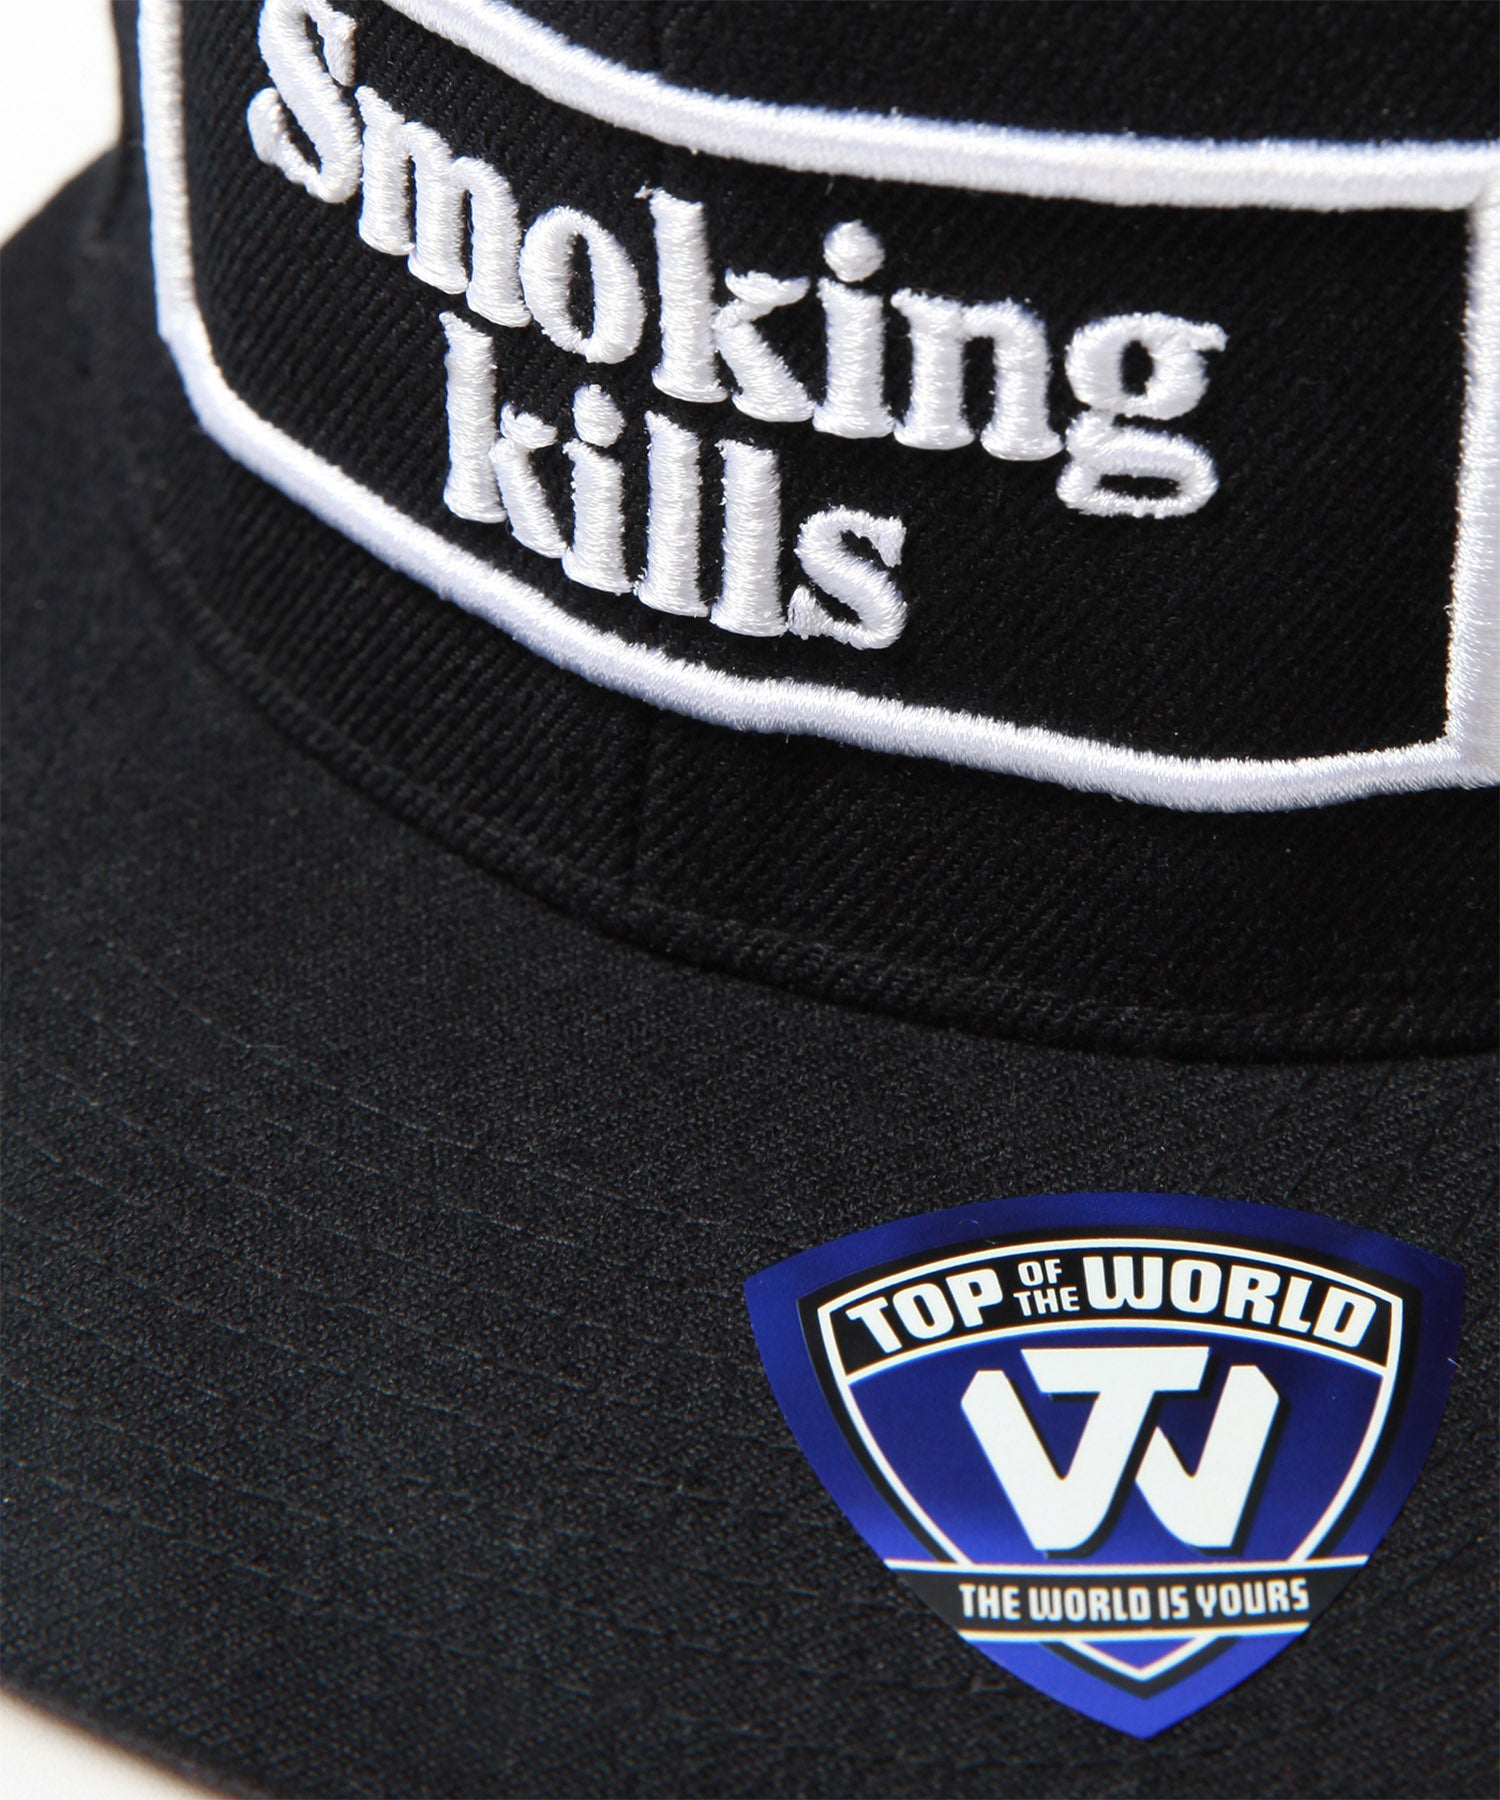 Smoking kills cap FRA1243